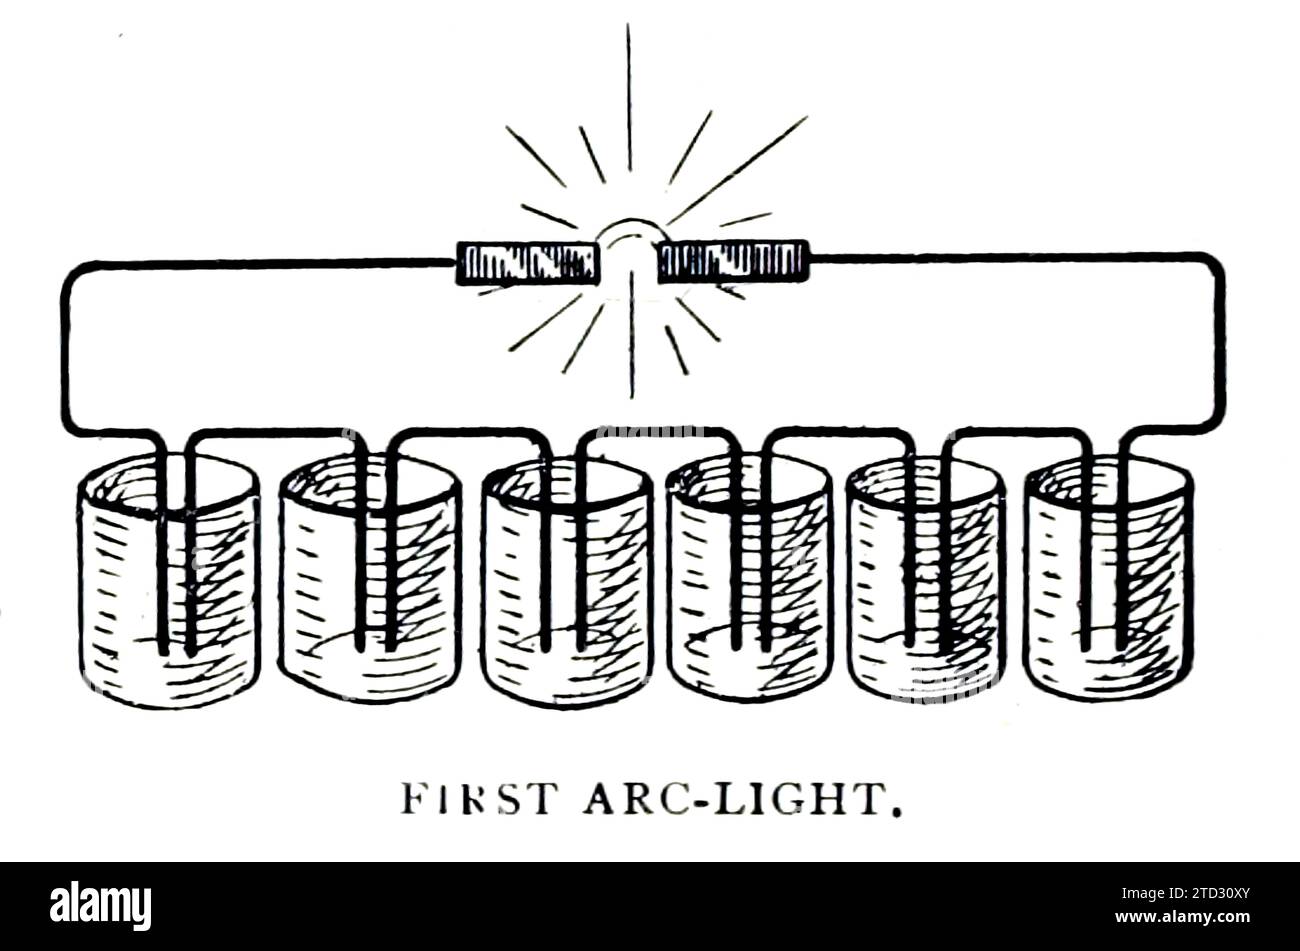 Abbildung des ersten Lichtbogens, der batteriebetrieben war. Aus „Beginnings and Future of the Arc Lamp“ von S M Hamill, aus dem Engineering Magazine, Band VII, 1894. Stockfoto